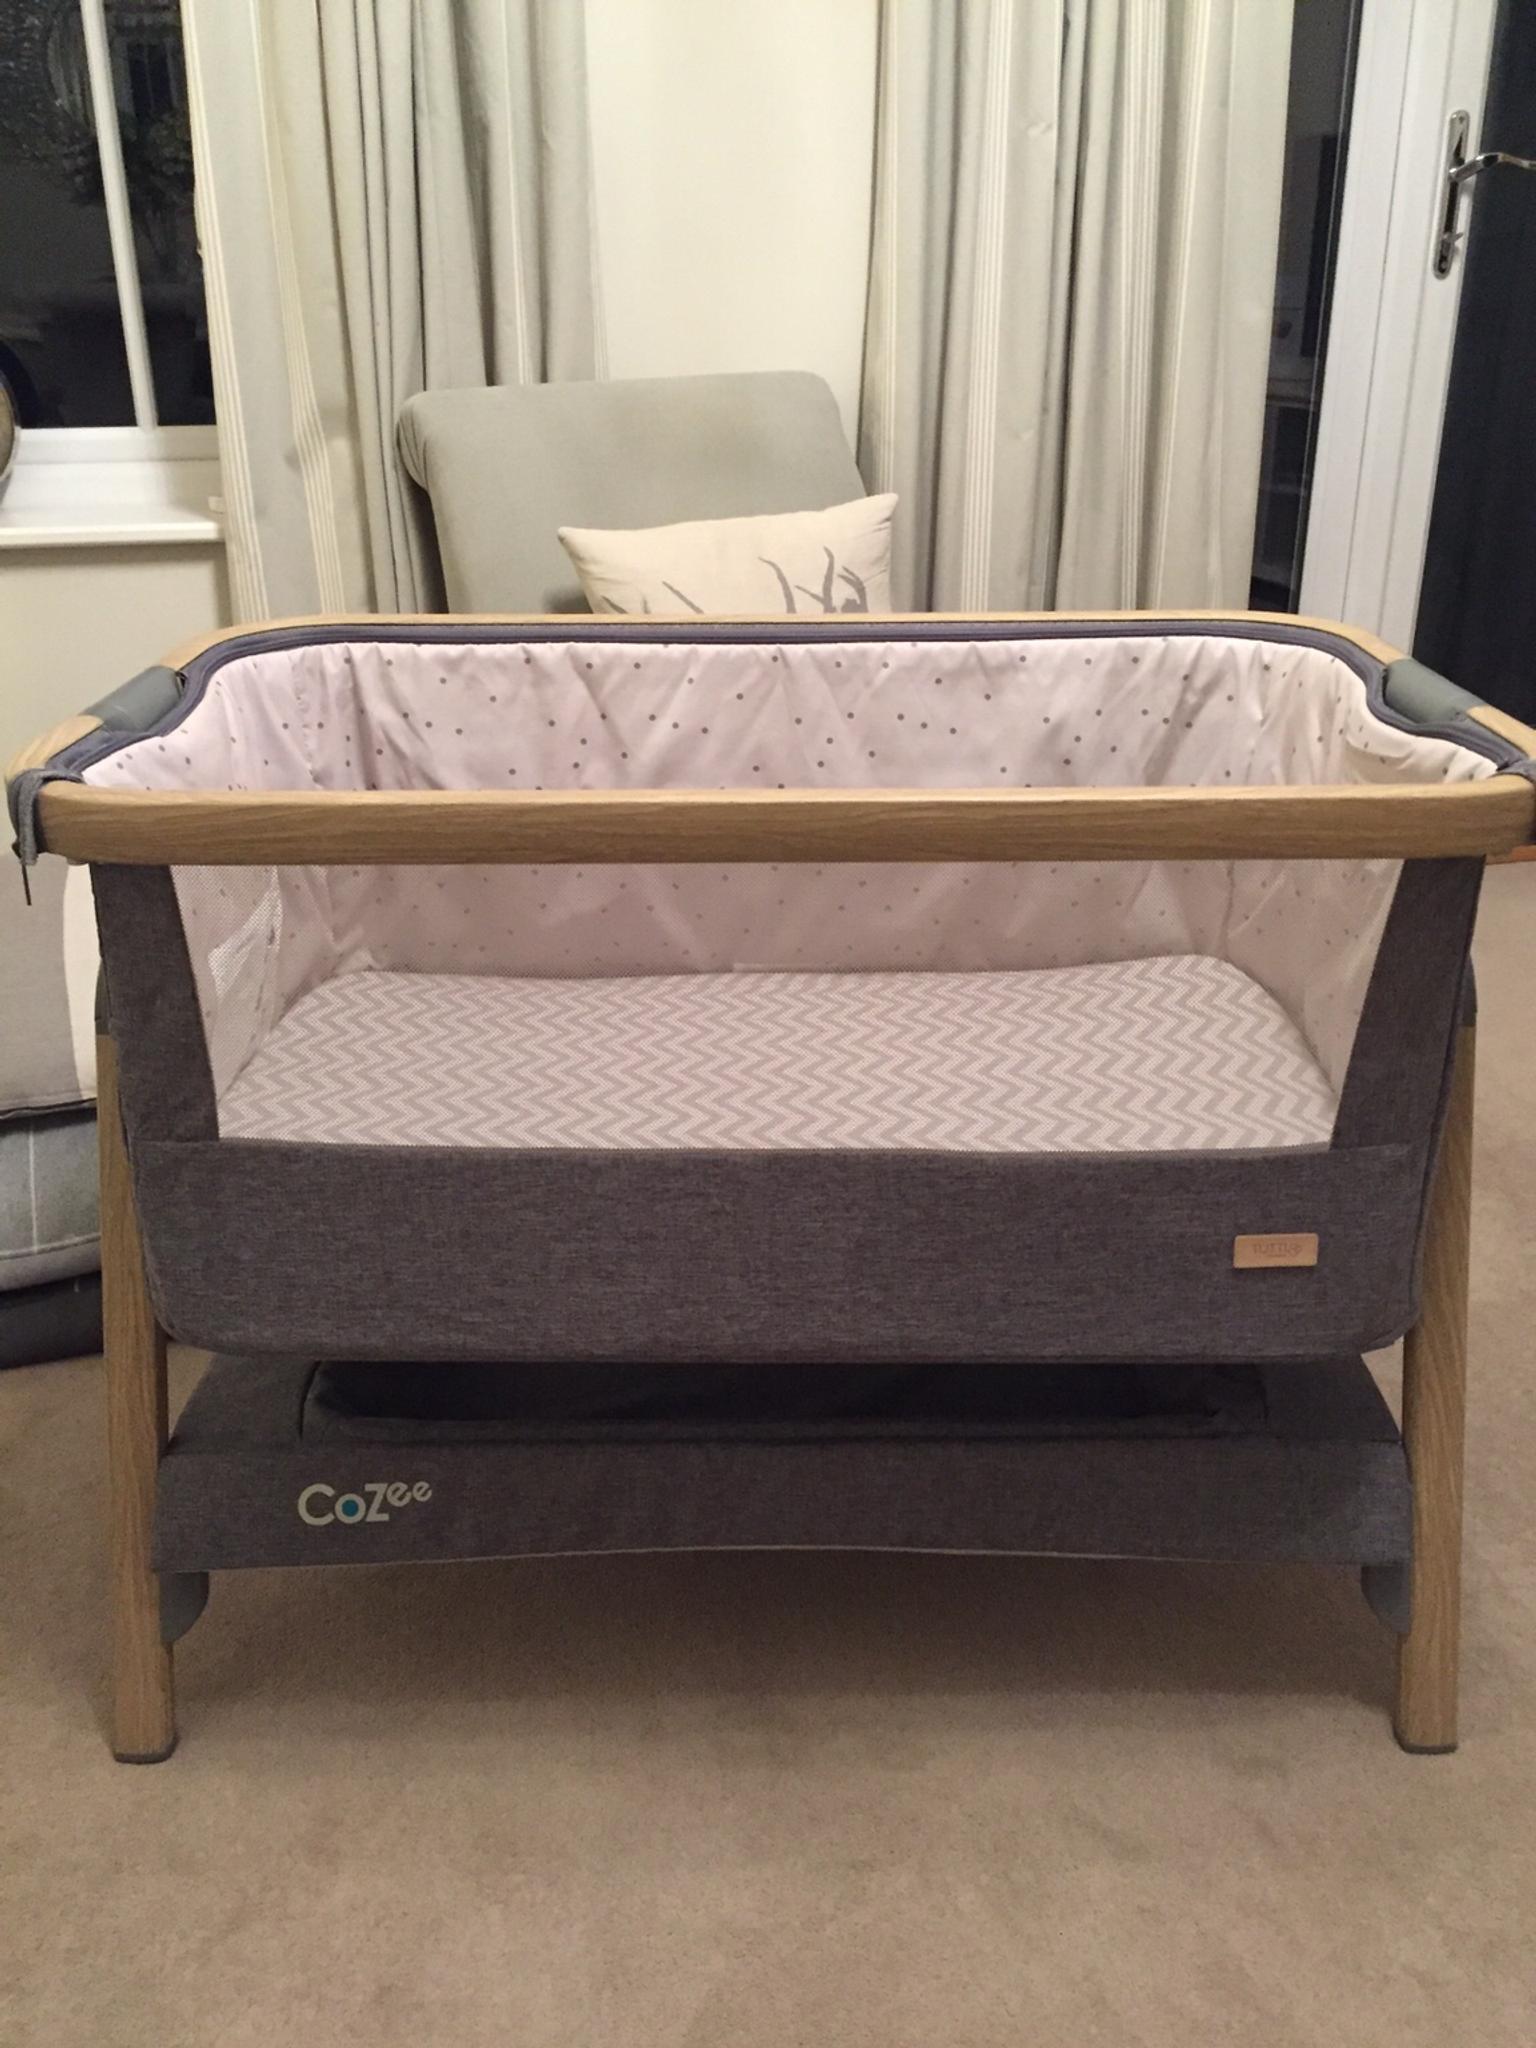 cozee bedside crib